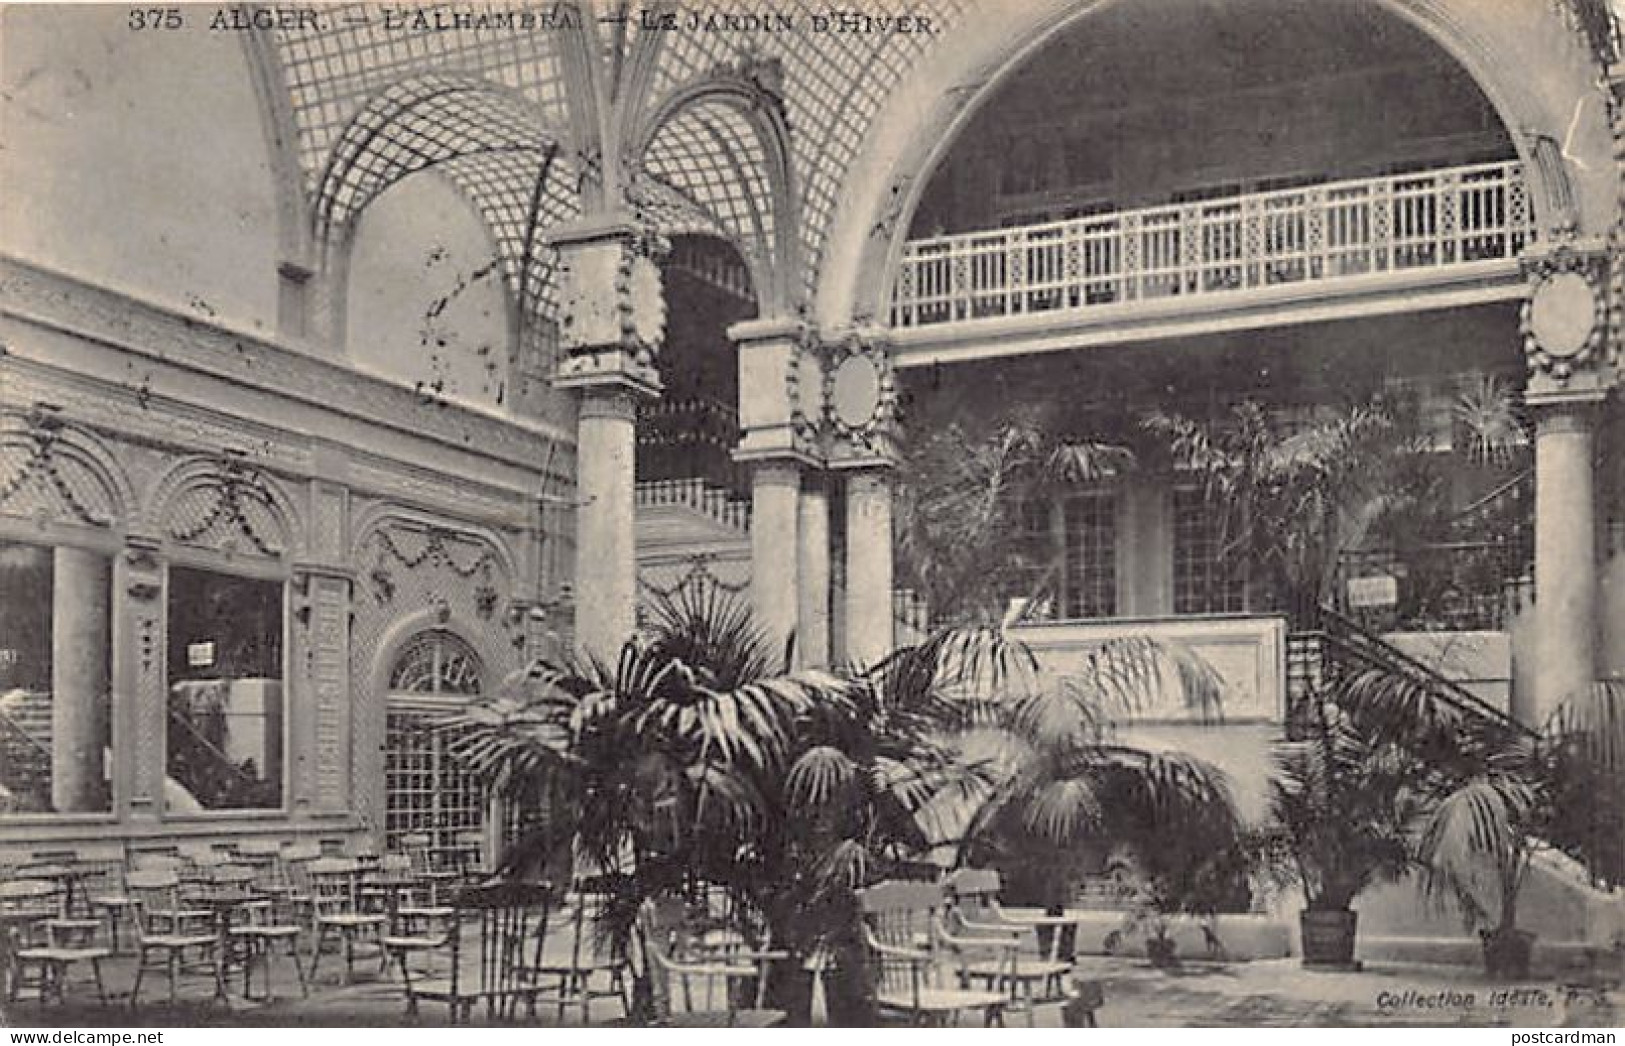 Algérie - ALGER - L'Alhambra - Le Jardind 'hiver - Ed. Collection Idéale P.S. 375 - Algiers